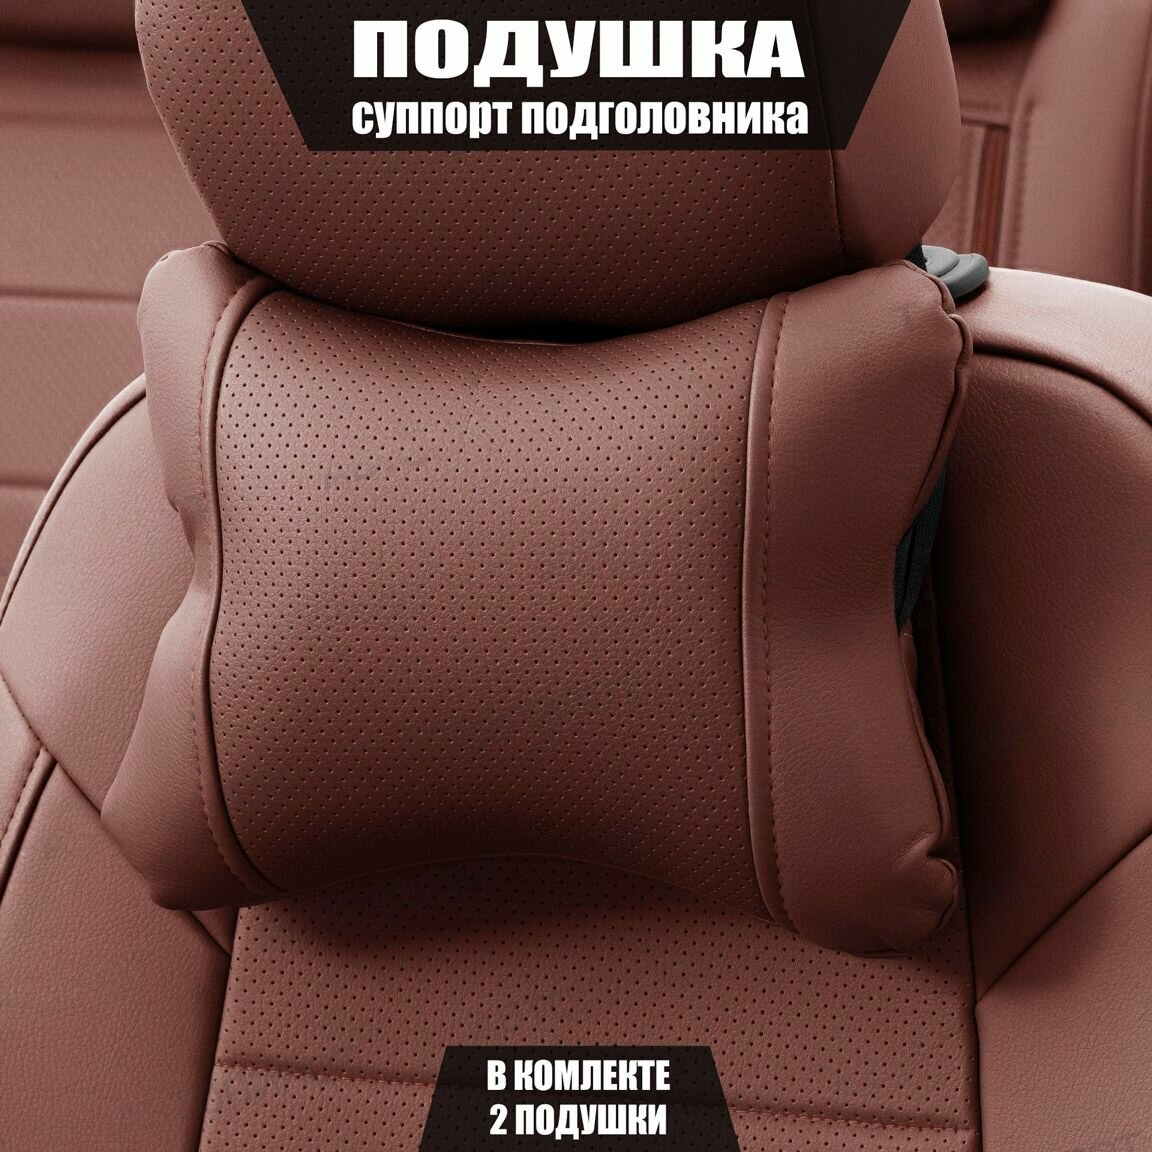 Подушки под шею (суппорт подголовника) для Киа КаИкс5 (2016 - 2018) внедорожник 5 дверей / Kia KX5, Экокожа, 2 подушки, Темно-коричневый